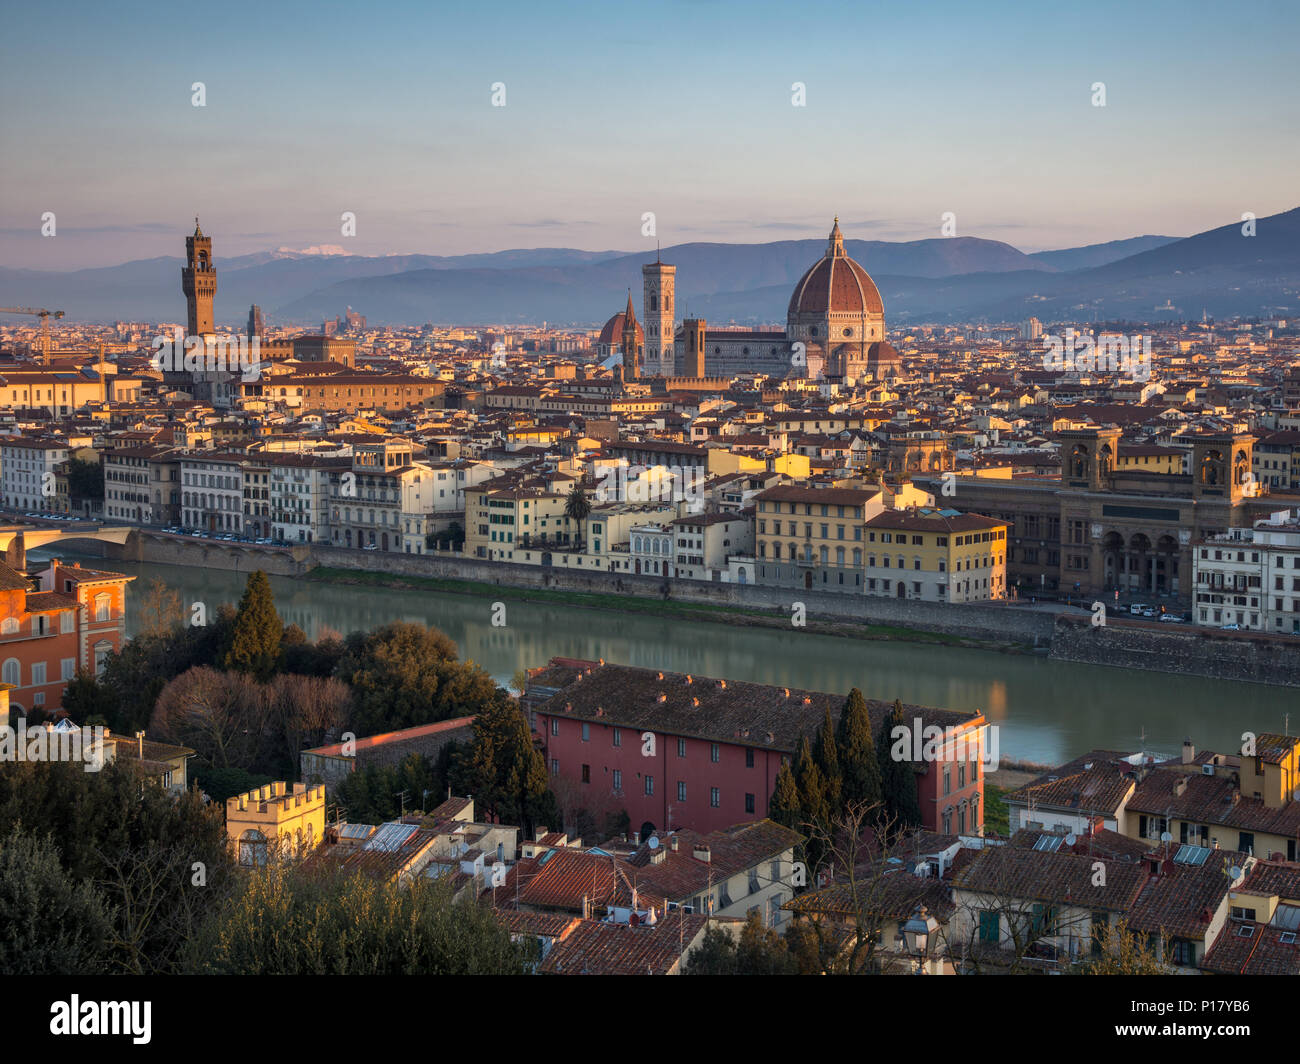 Florencia, Italia - 24 de marzo de 2018: La luz de la mañana ilumina el paisaje urbano de Florencia, incluyendo los hitos históricos del Palazzo Vecchio y el dúo Foto de stock